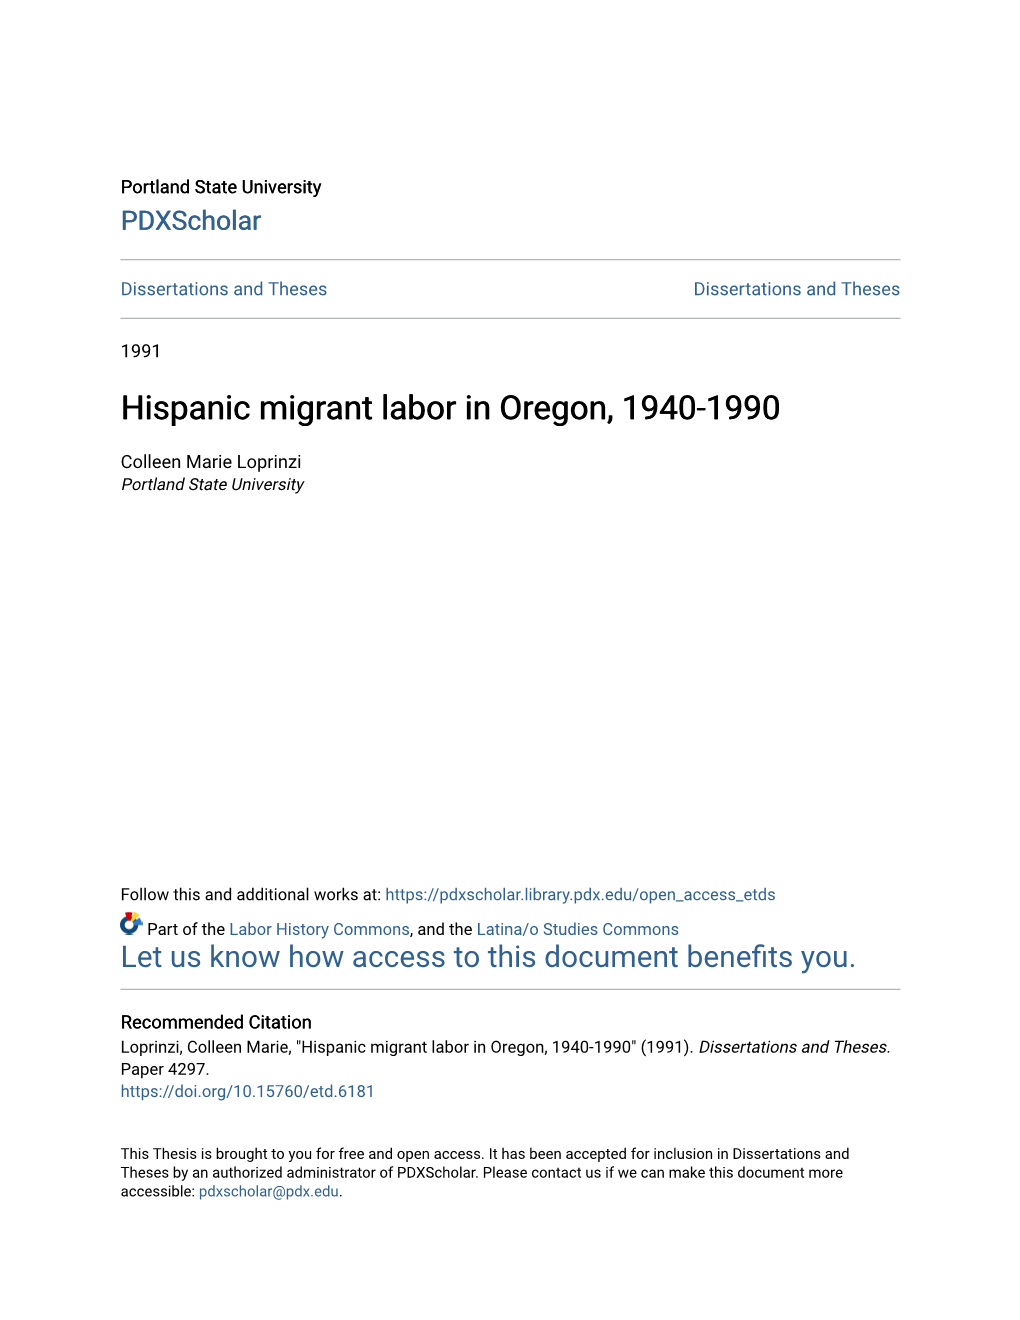 Hispanic Migrant Labor in Oregon, 1940-1990